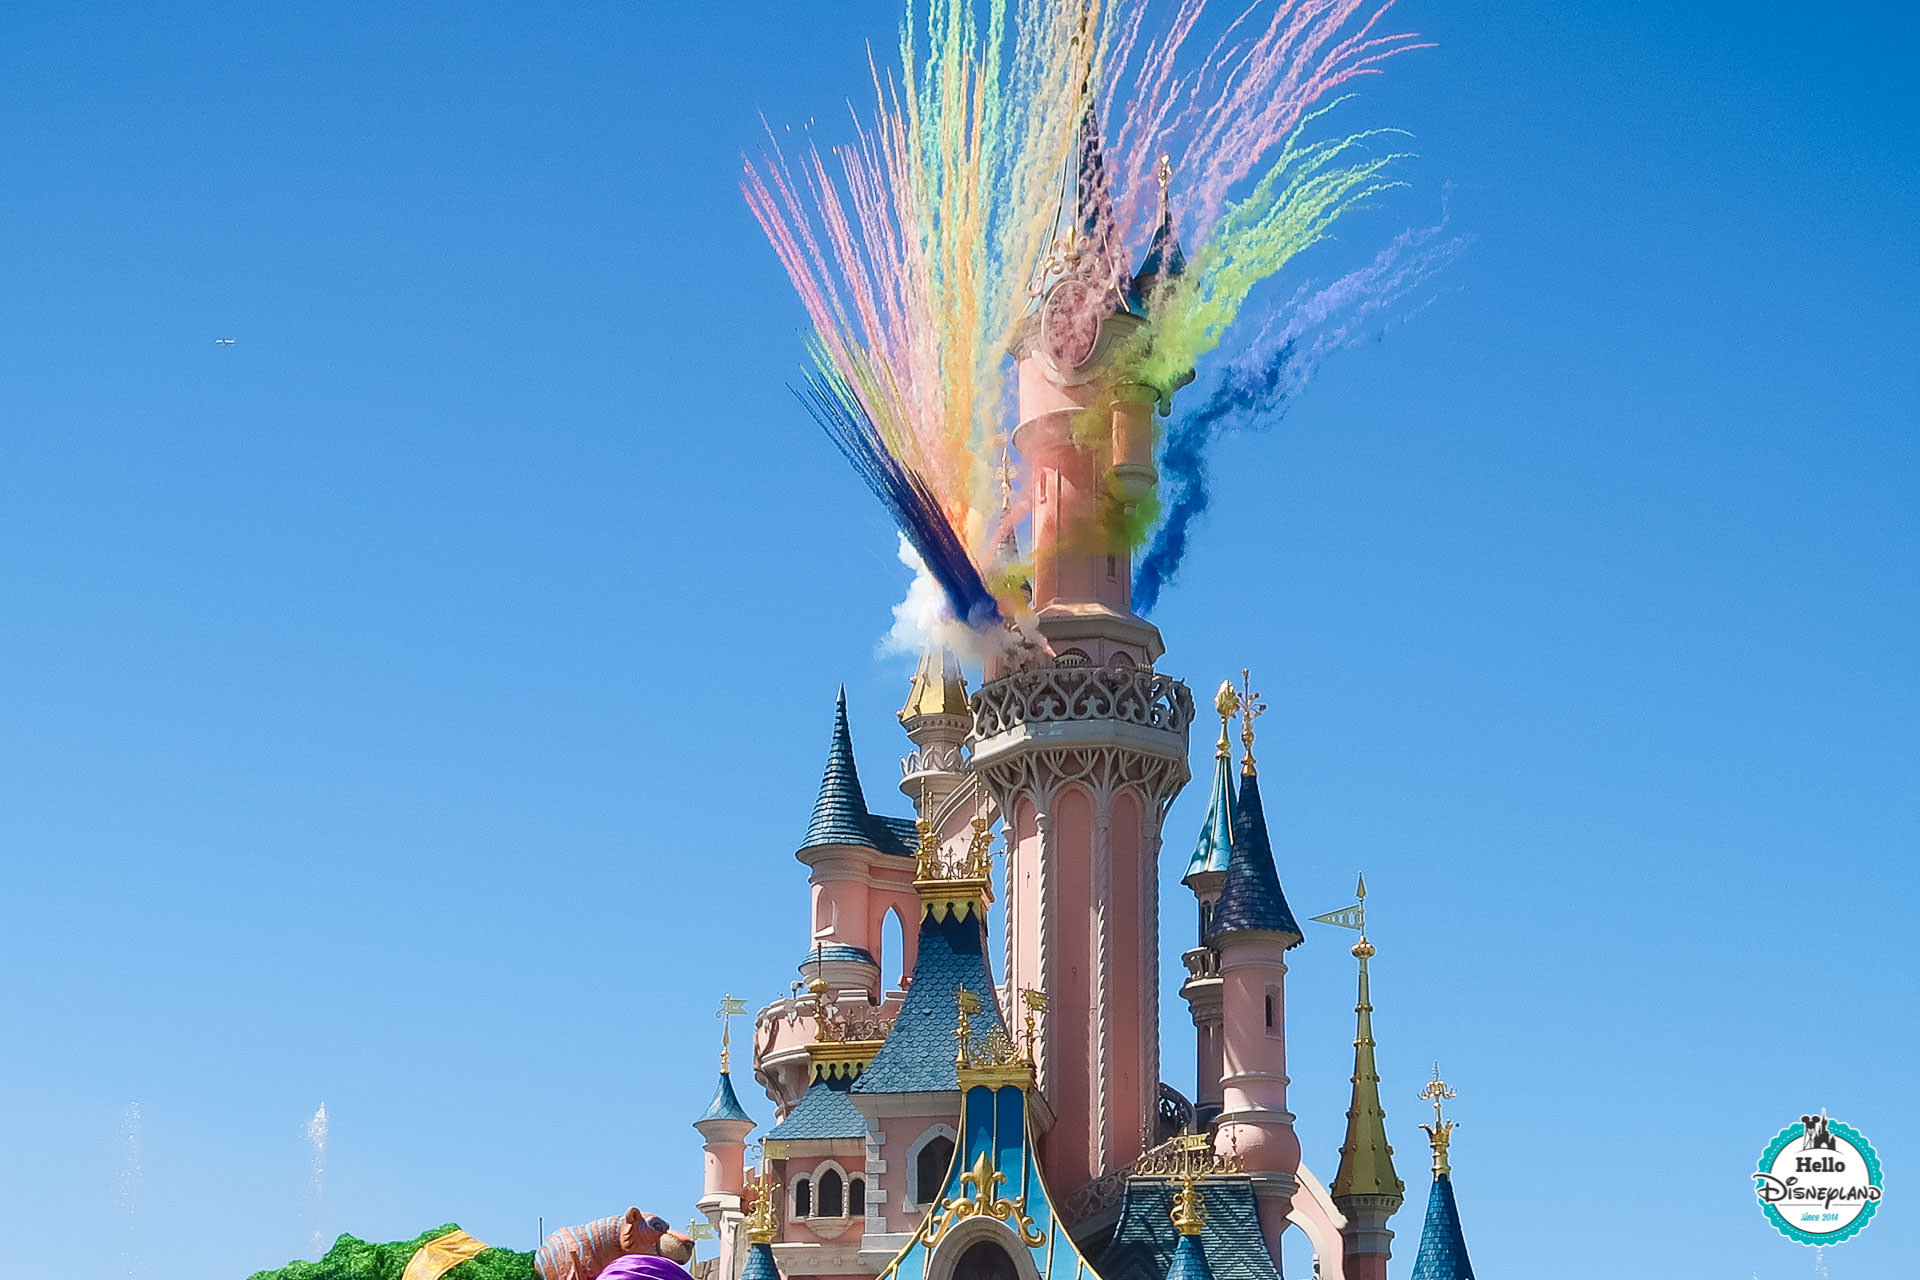 Un spectacle Le Roi Lion arrive à Disneyland Paris !